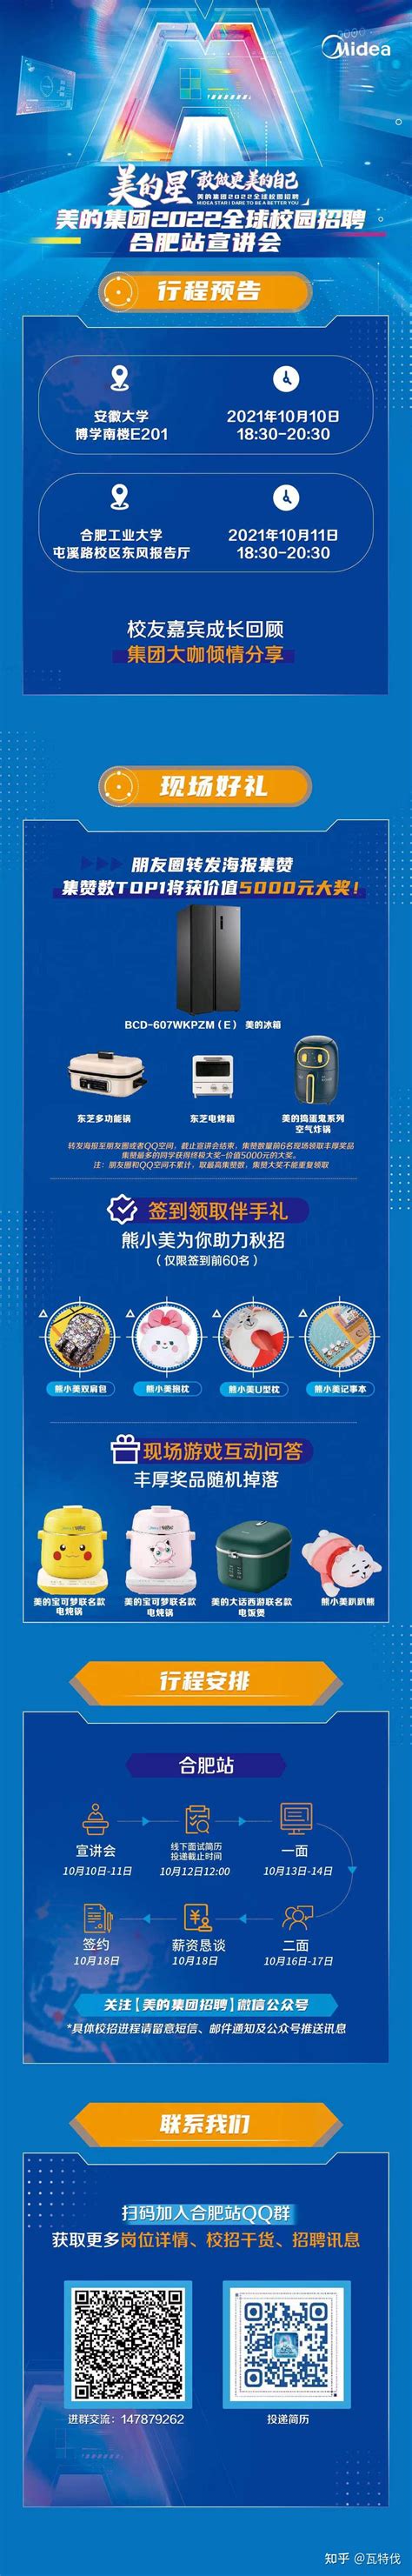 合肥就业招聘服务平台「杭州玛亚科技供应」 - 8684网企业资讯